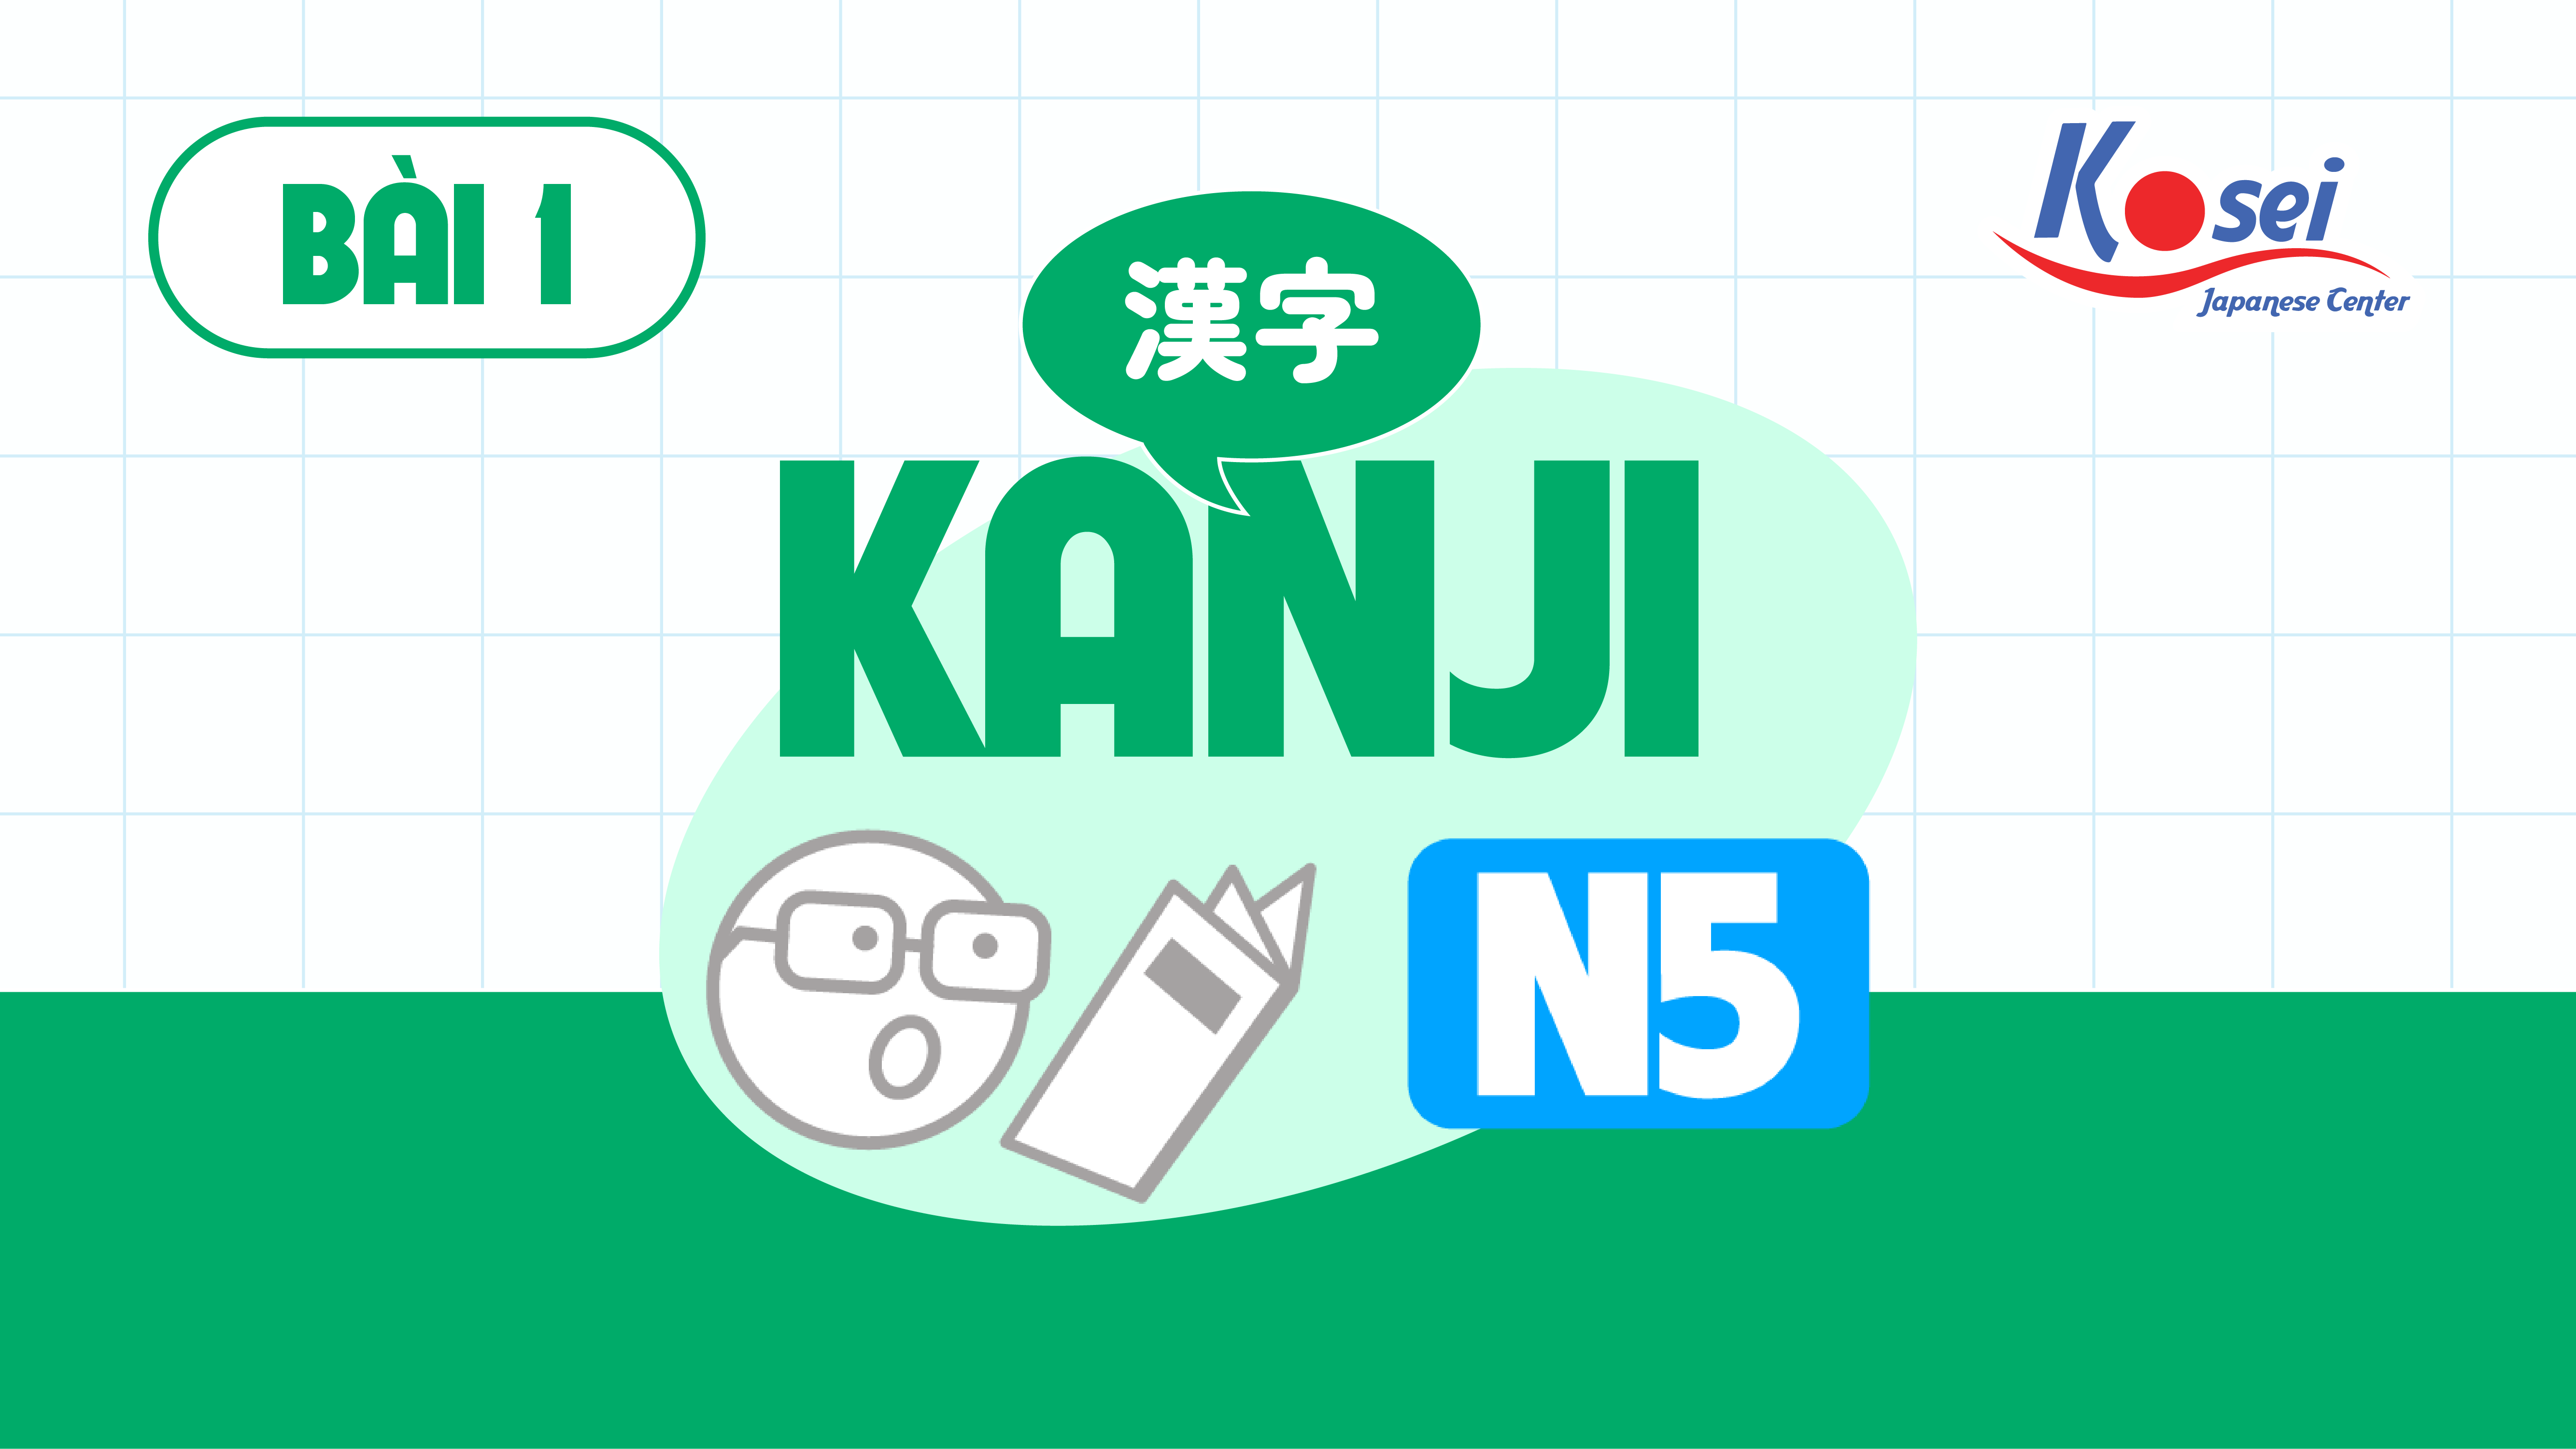 Kanji 1